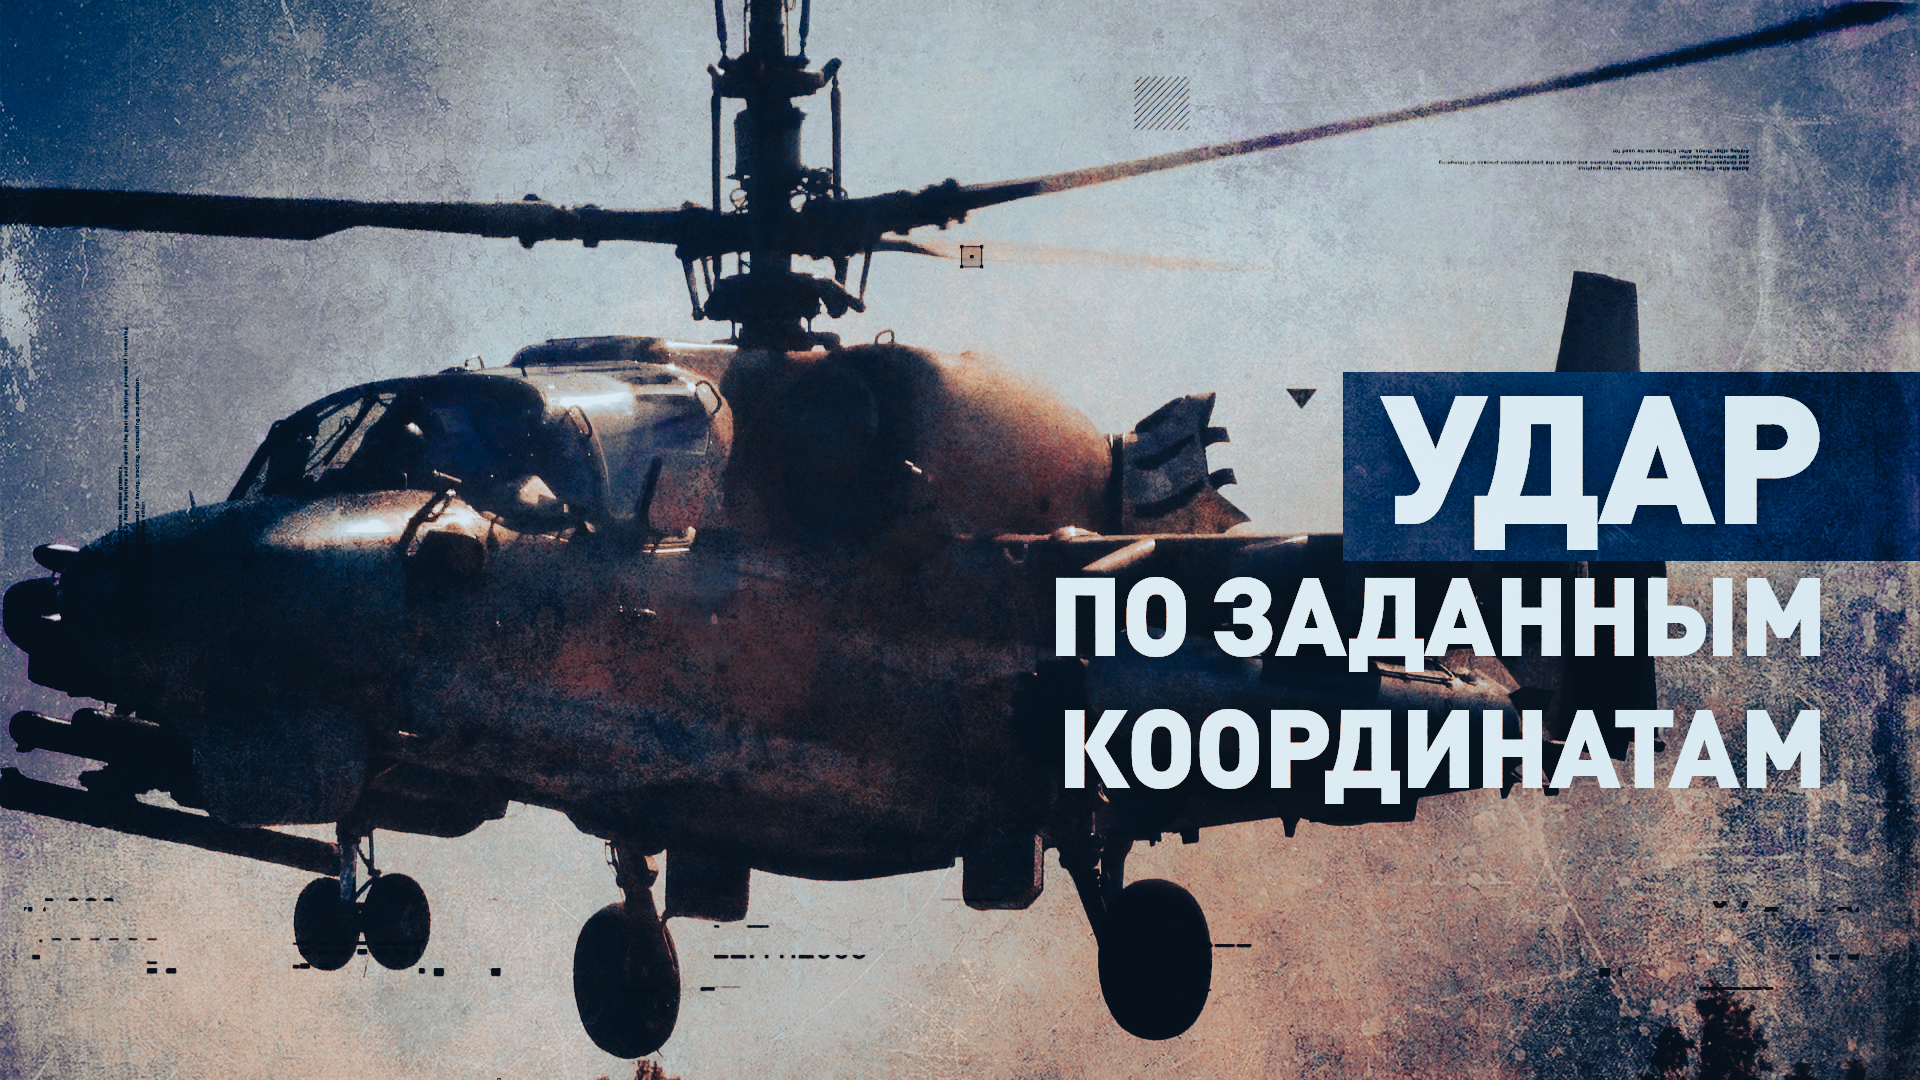 Экипаж вертолёта Ка-52М уничтожил опорные пункты и живую силу ВСУ